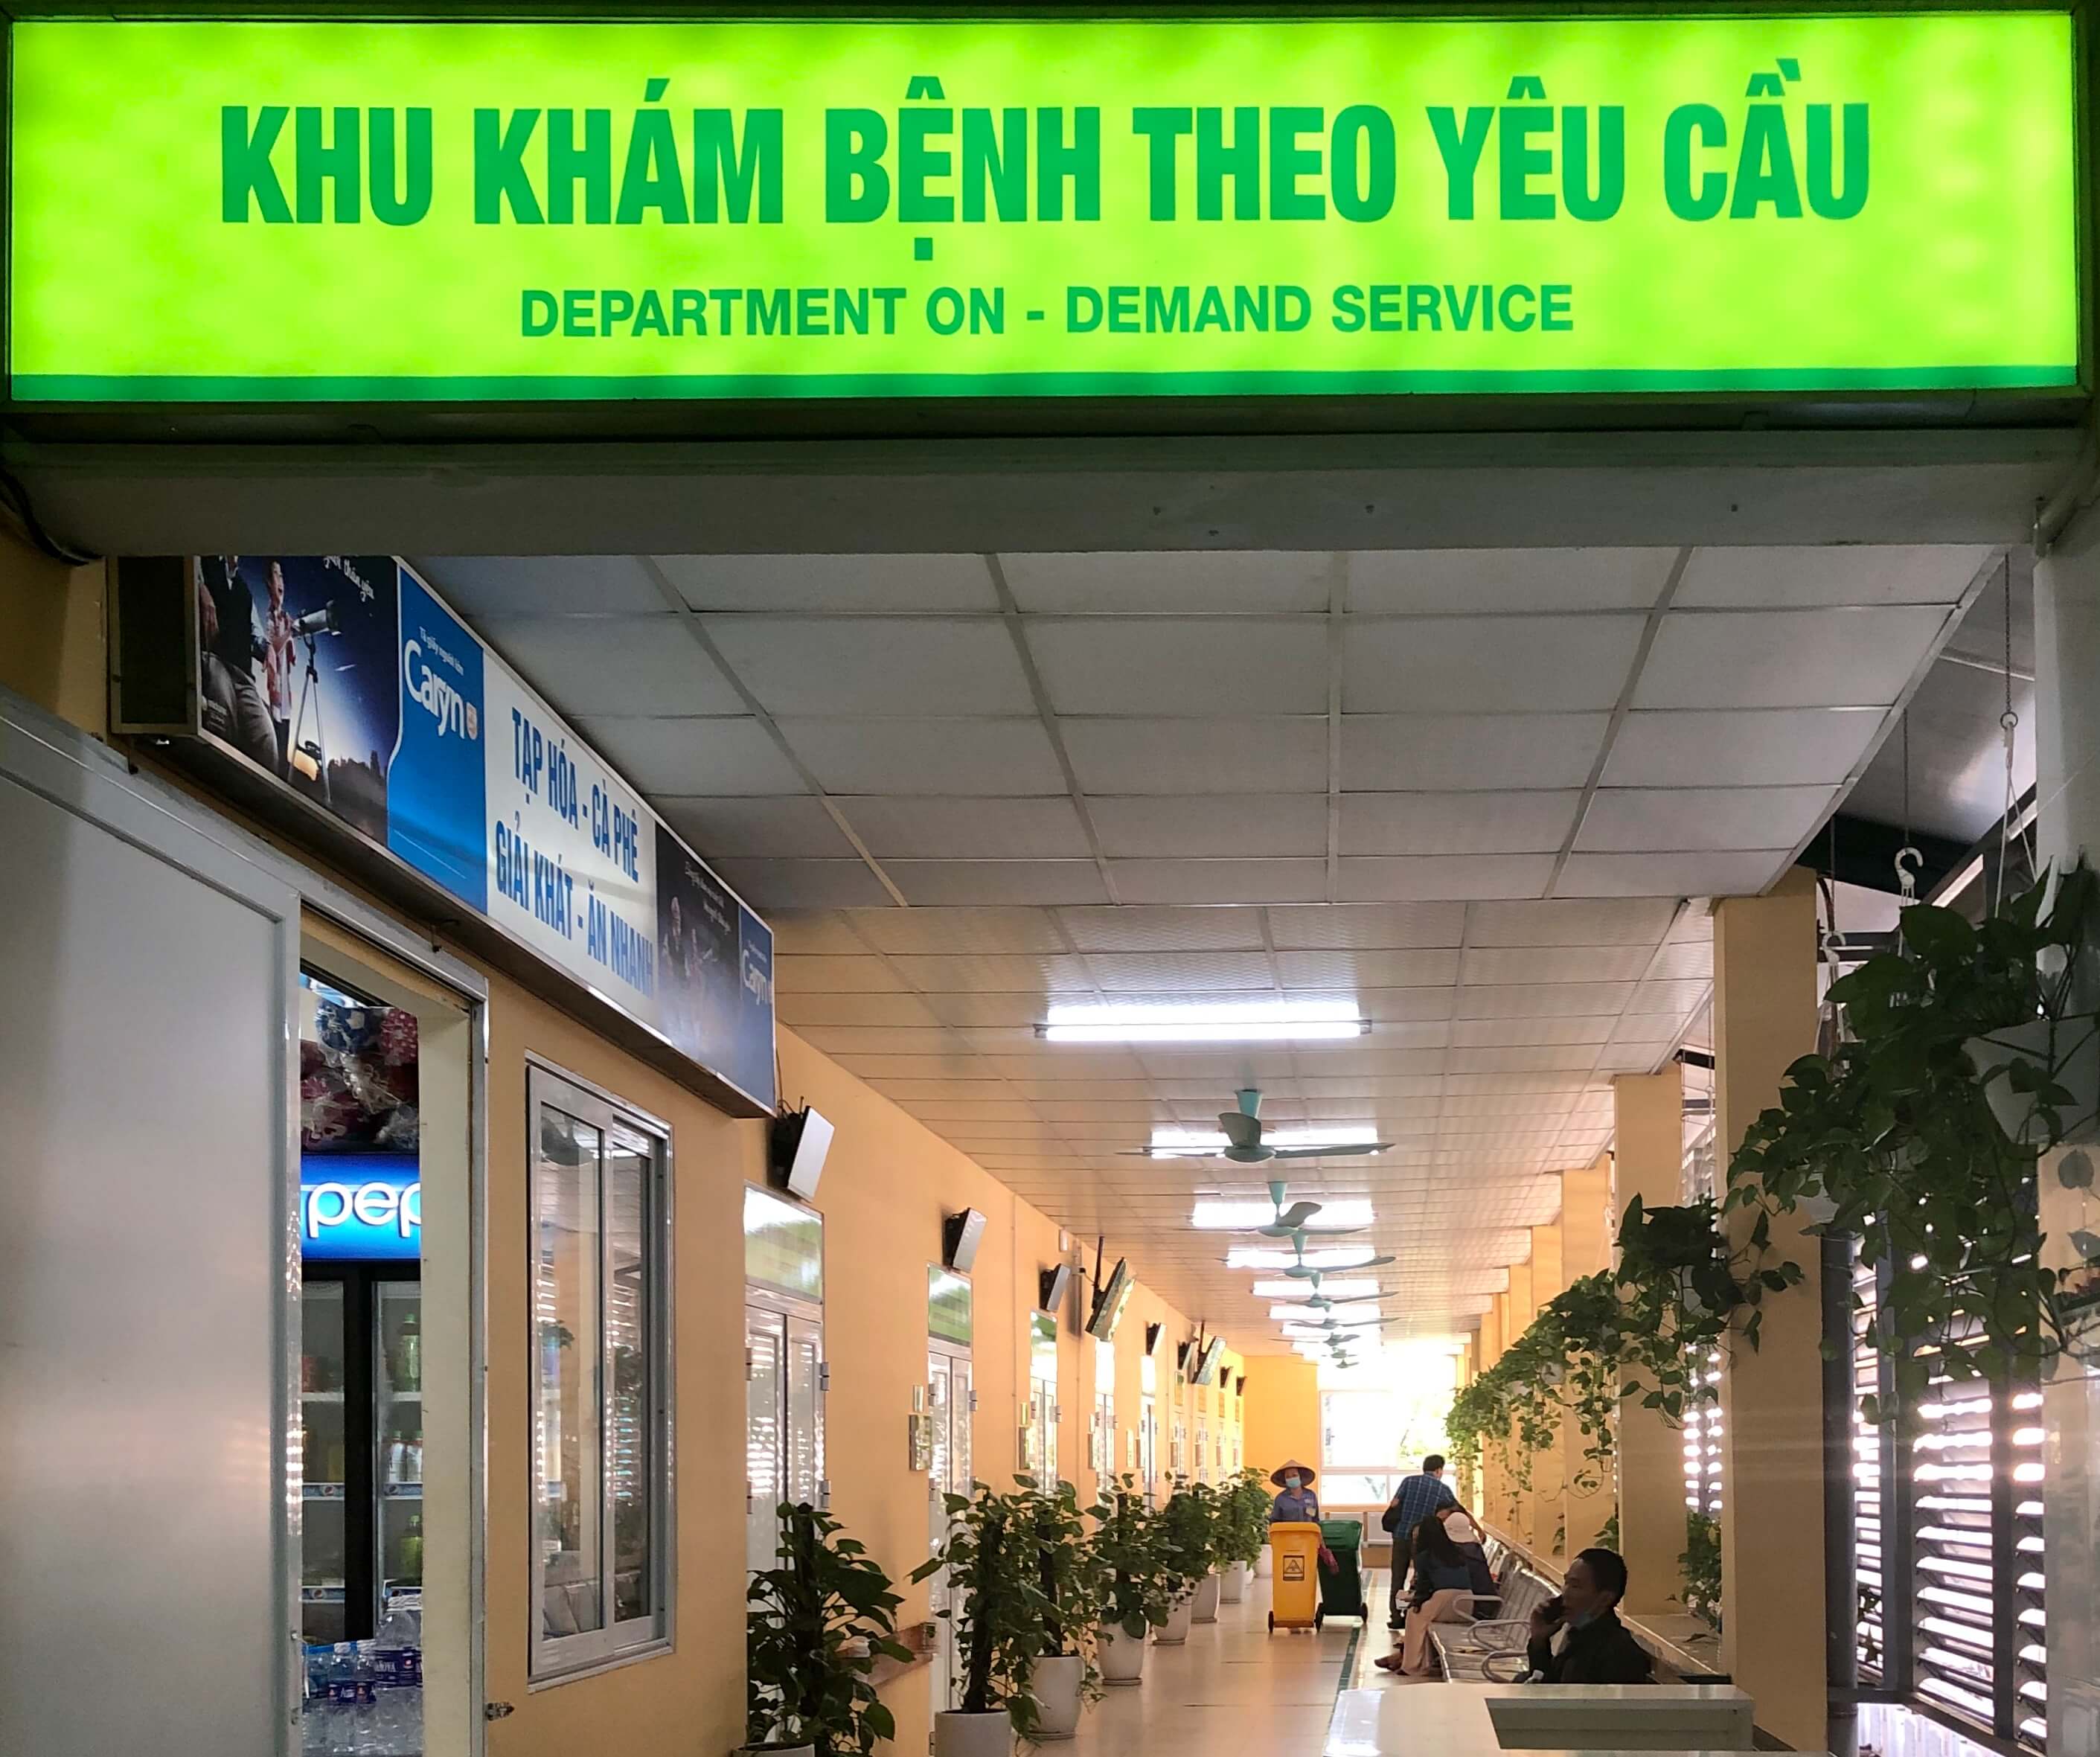 Khu khám chữa bệnh theo yêu cầu BV Hữu Nghị Việt Đức